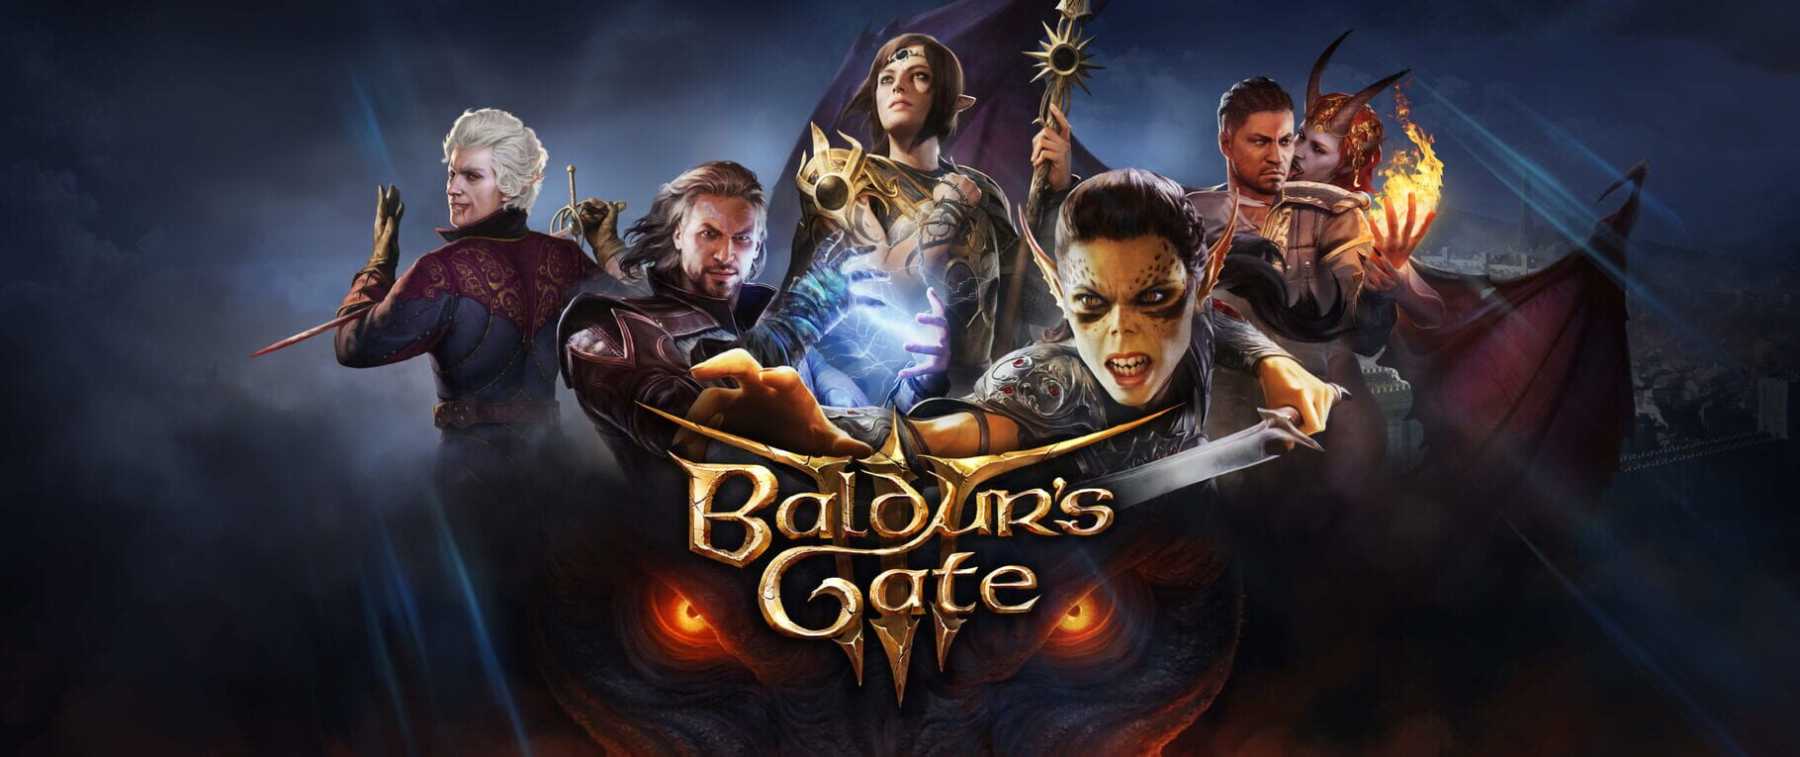 Games Like Baldurs Gate